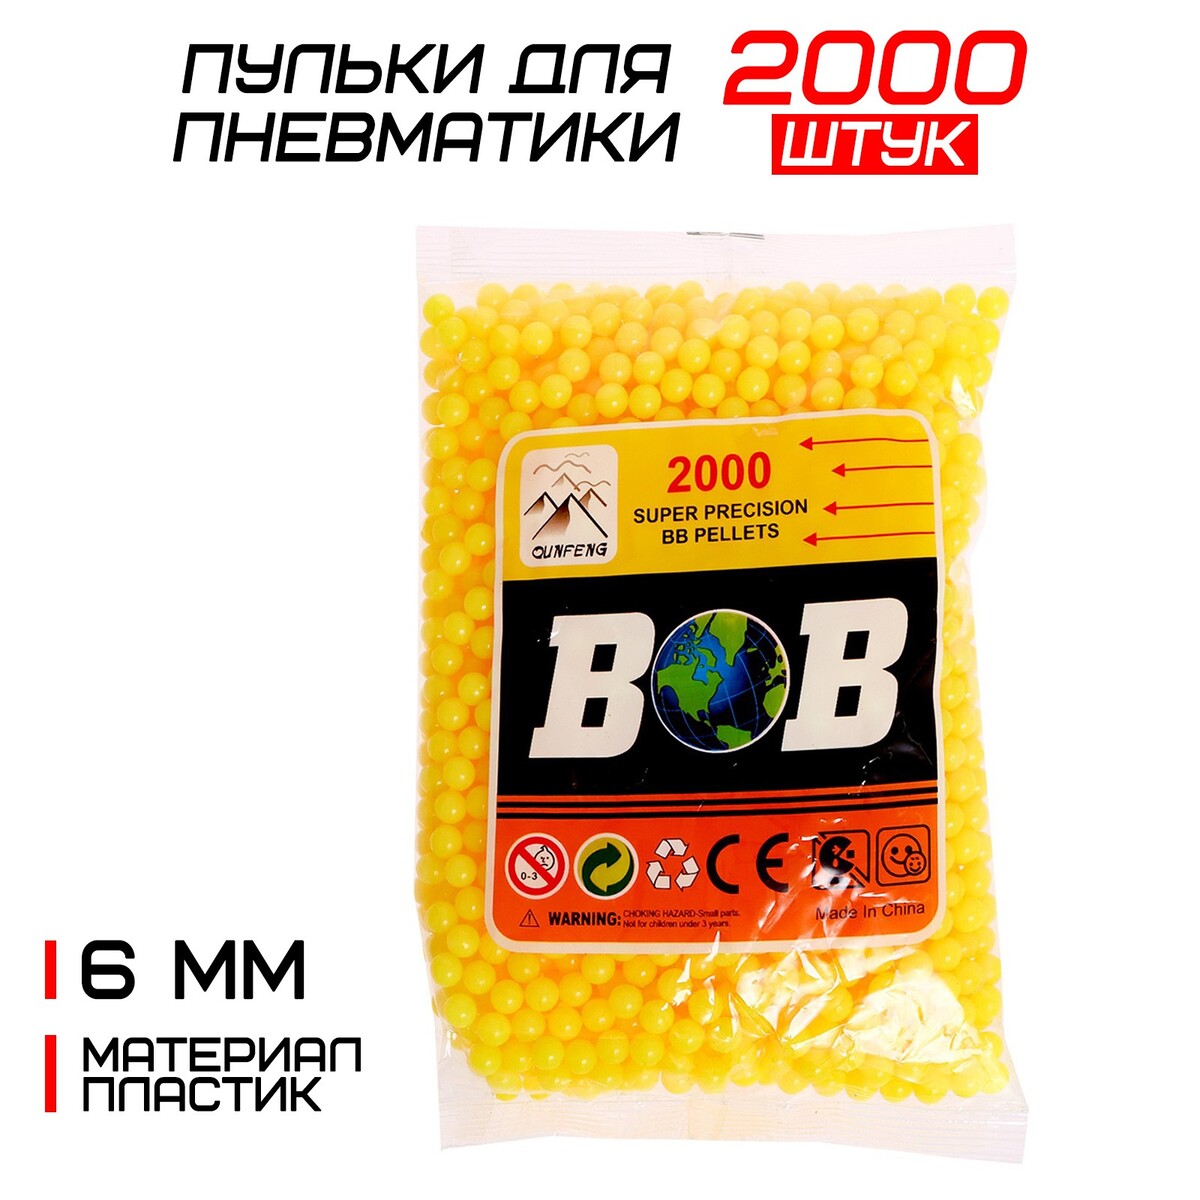 Пульки 6 мм, цвет желтый, в пакете, 2000 шт. пульки в банке cs toys bb 2c 6 мм 2000 шт a813094